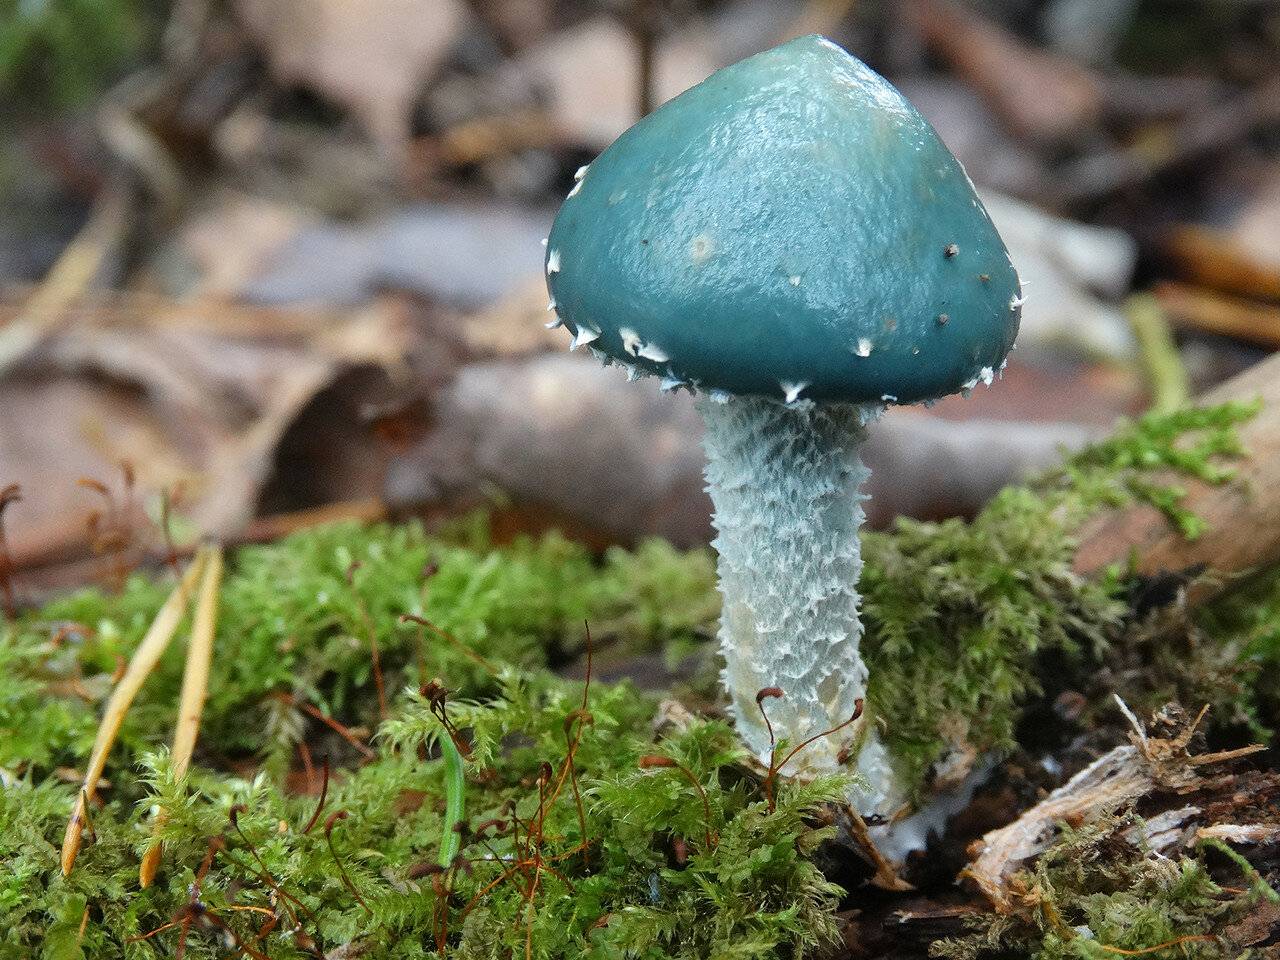 Строфария небесно-синяя (stropharia caerulea): фото и описание гриба